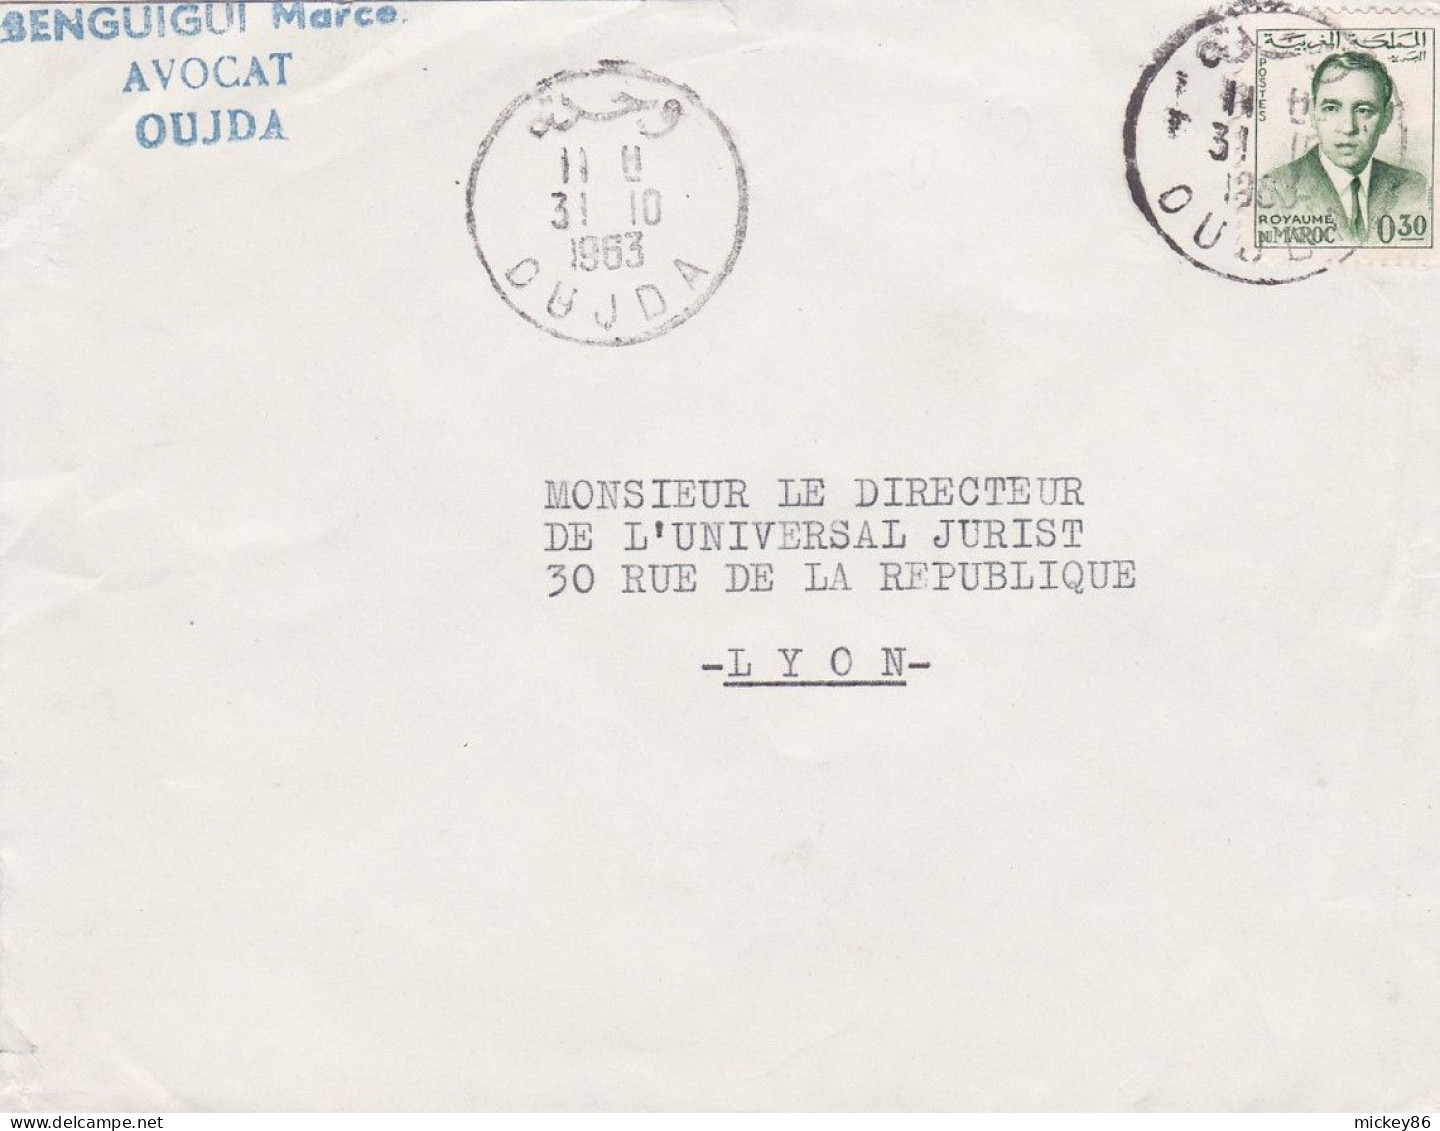 Maroc -1963--Lettre De OUJDA  Pour LYON-69 (France) .timbre Seul Sur Lettre...Beau Cachet...personnalisée BENGUIGUI - Marocco (1956-...)